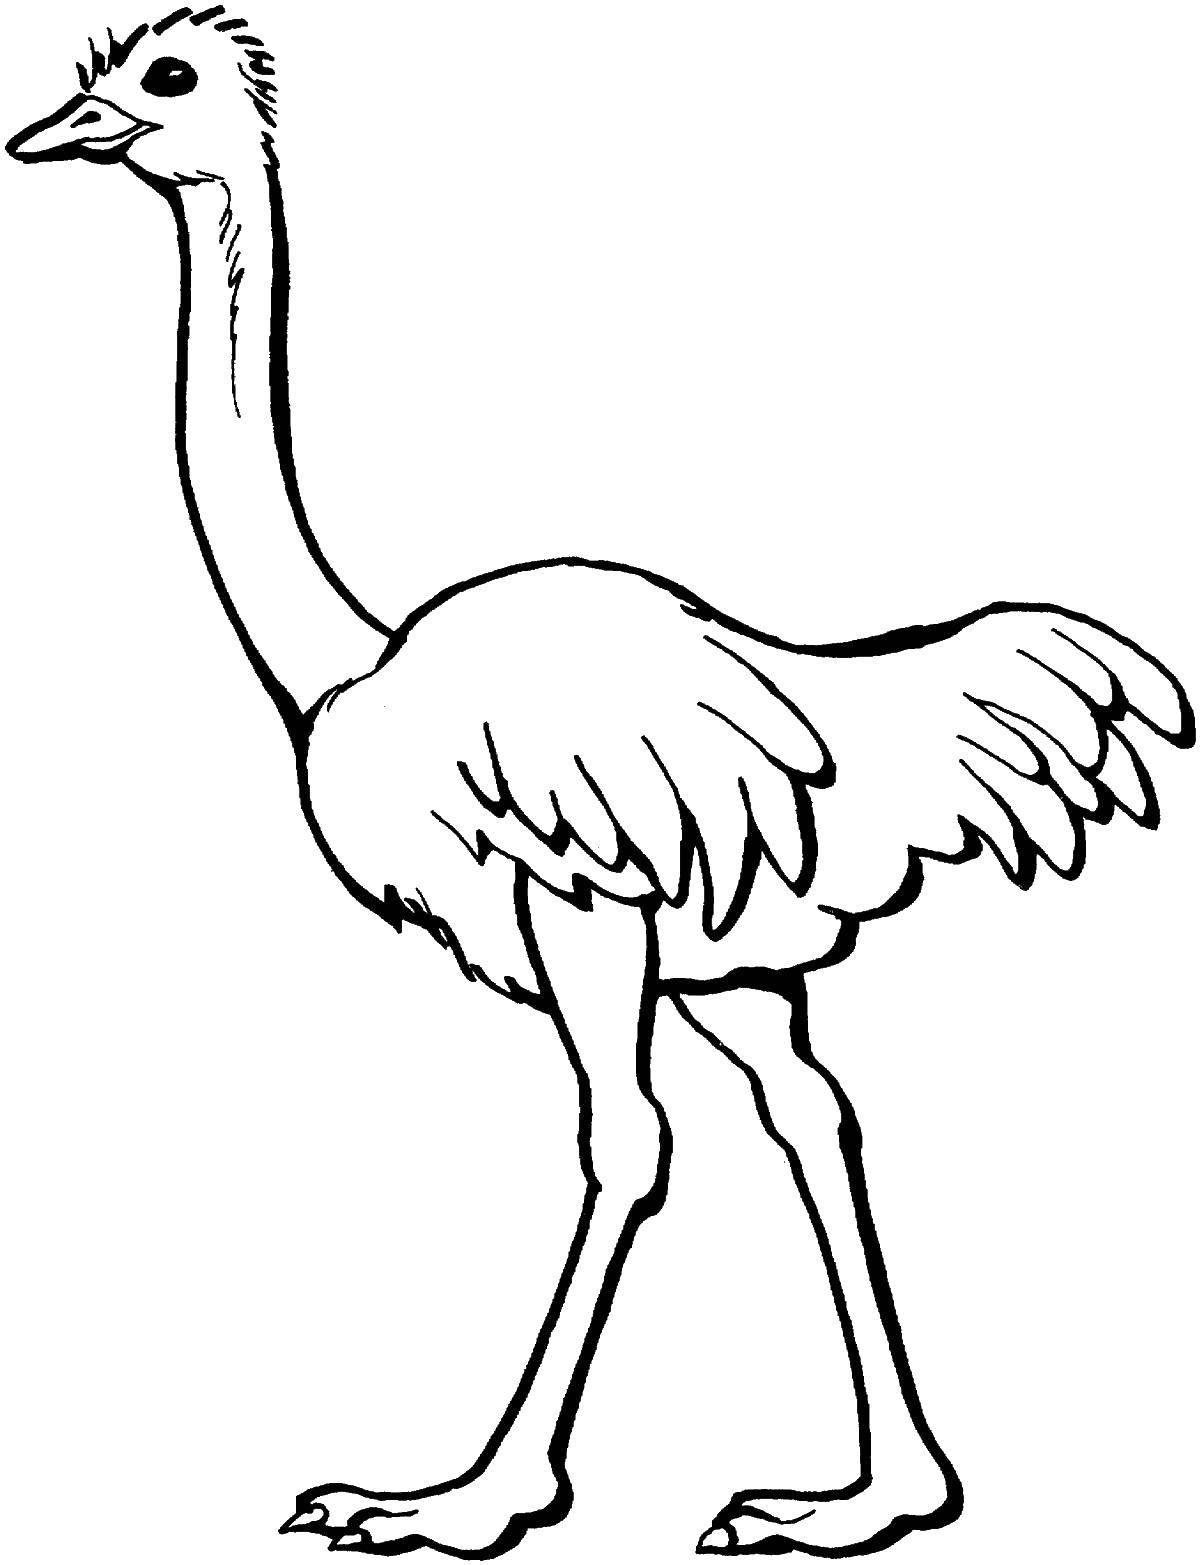 Название: Раскраска Страус с длиной шеей. Категория: птицы. Теги: страус, песок, шея.